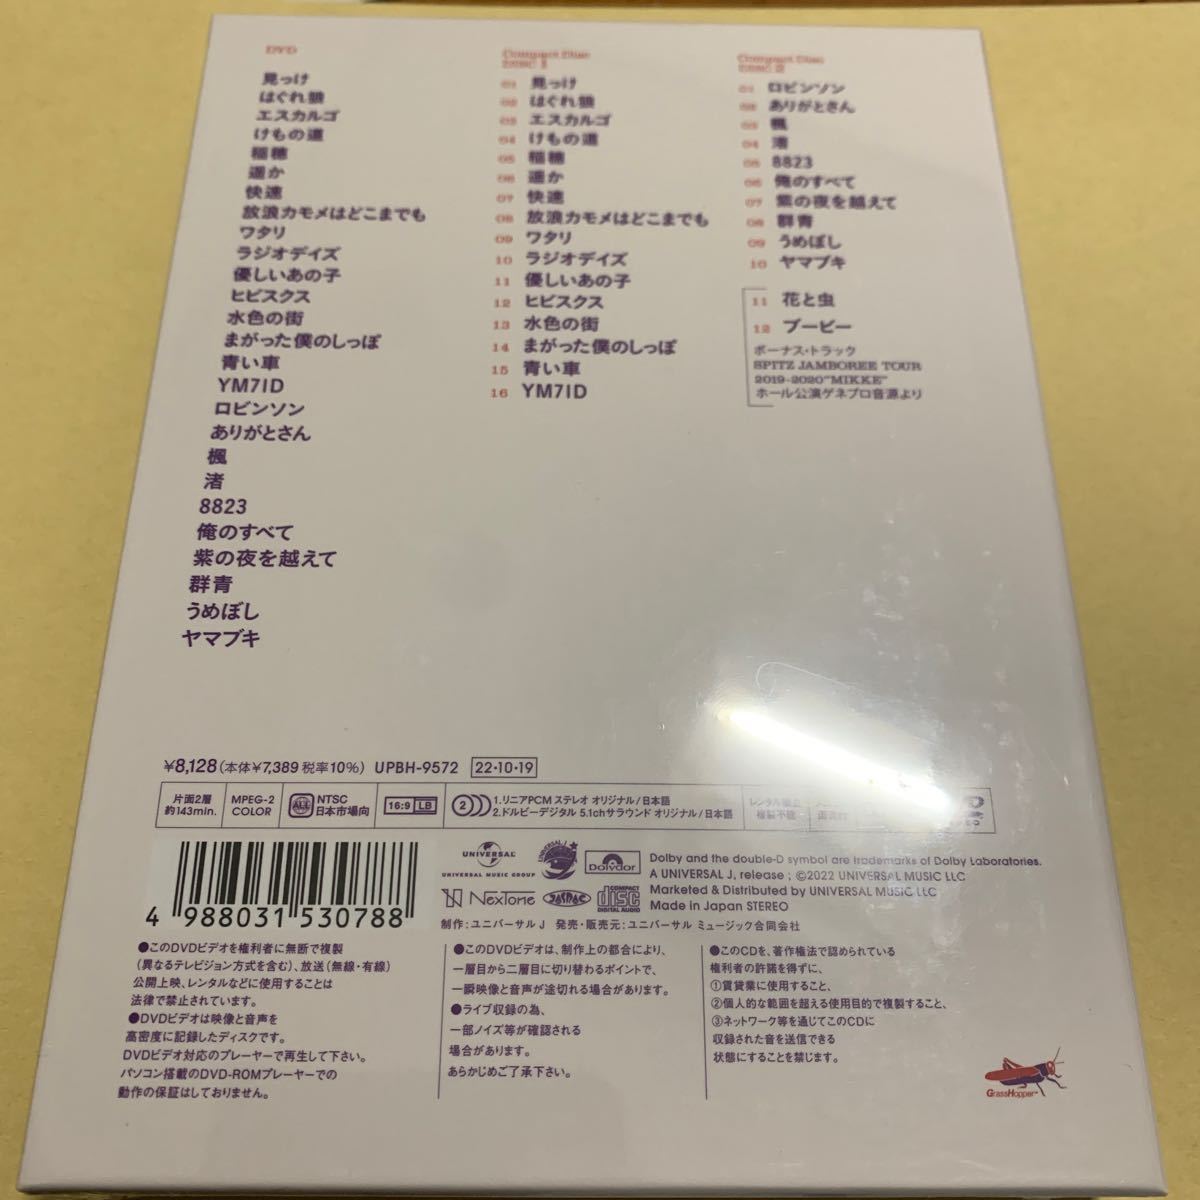 ☆新品未開封☆ スピッツ / SPITZ JAMBOREE TOUR 2021 NEW MIKKE 初回限定盤 DVD + 2CDの画像2